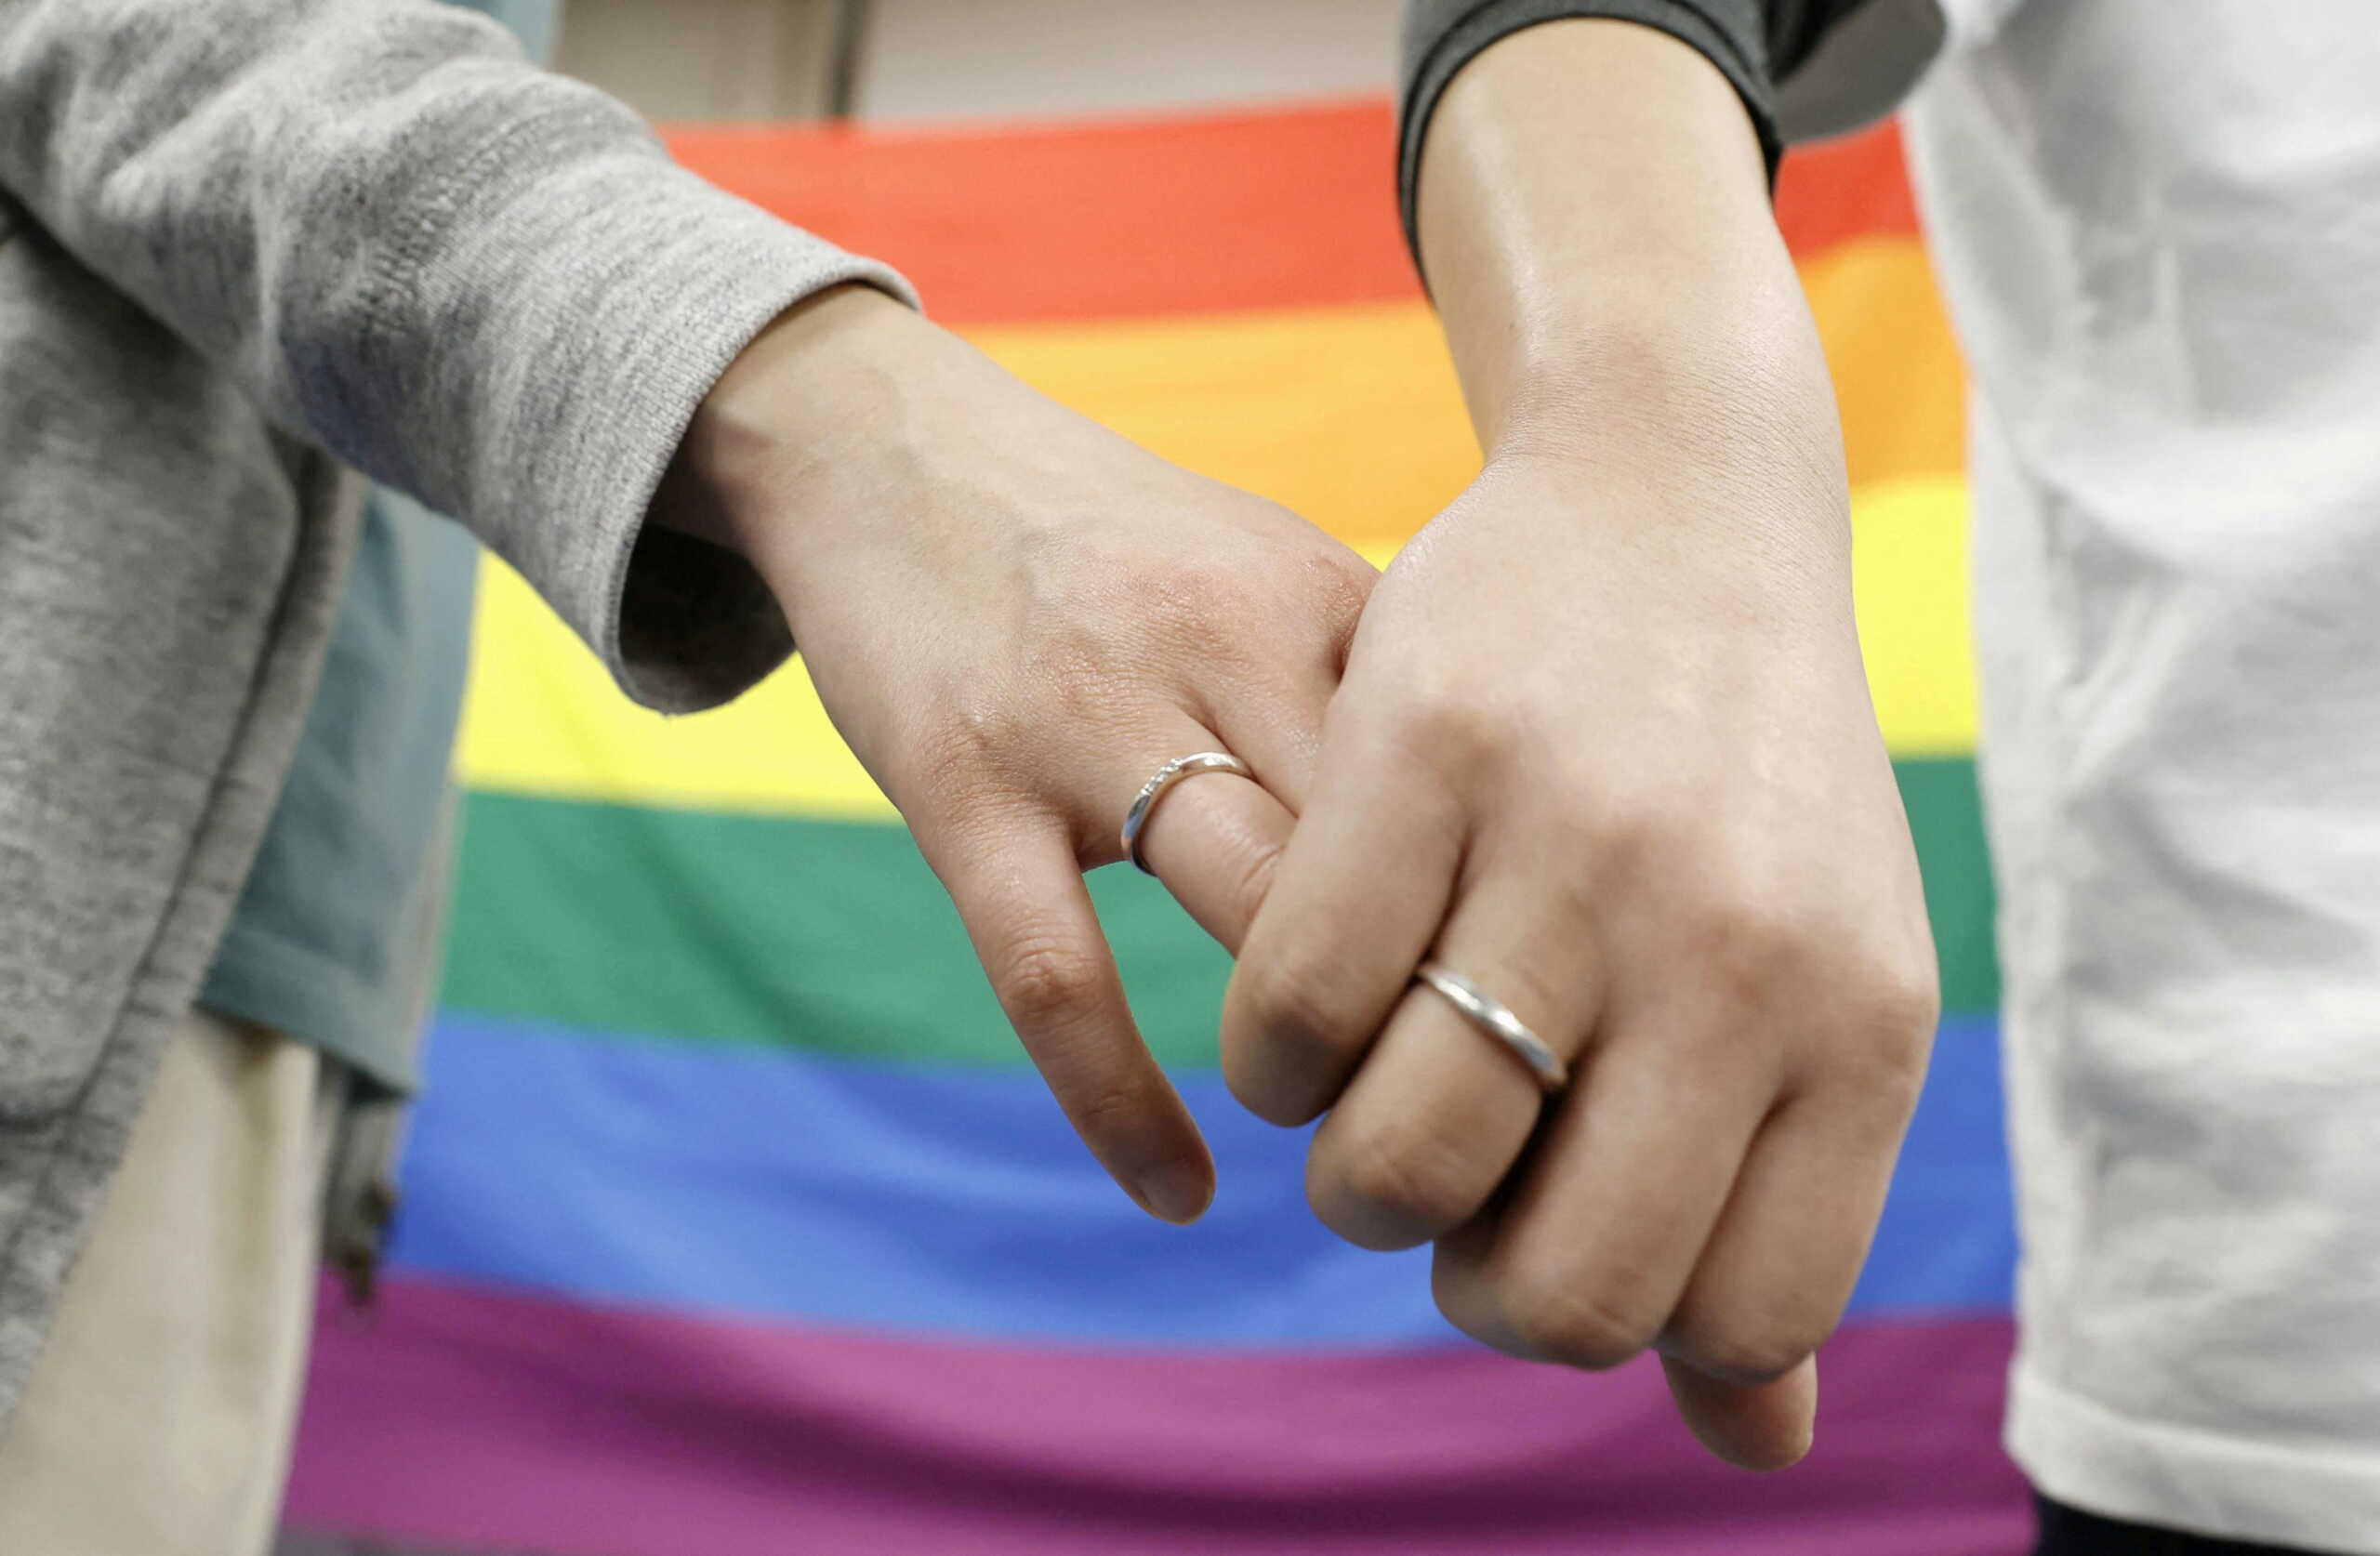 ΗΠΑ: Φόβοι για τα δικαιώματα των ομοφυλόφιλων και την αντισύλληψη μετά την απαγόρευση των αμβλώσεων